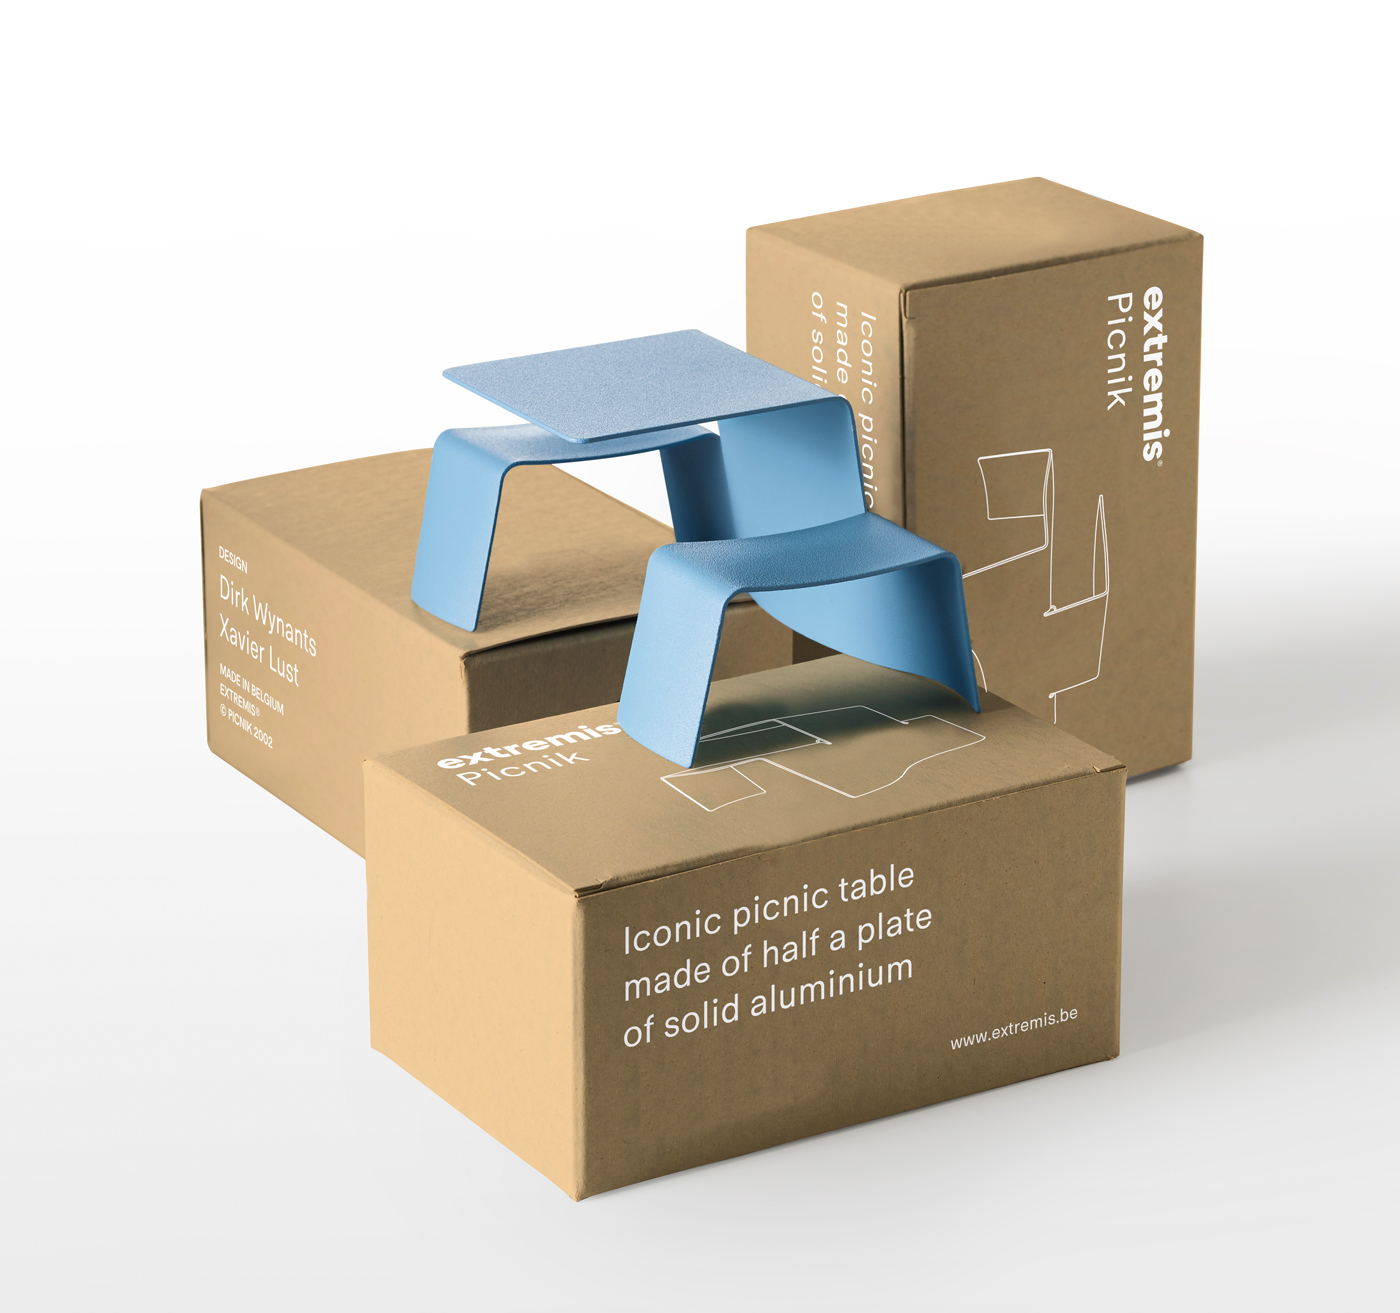 Extremis picnik model furniture dirk wynants Xavier Lust Packaging miniature furniture